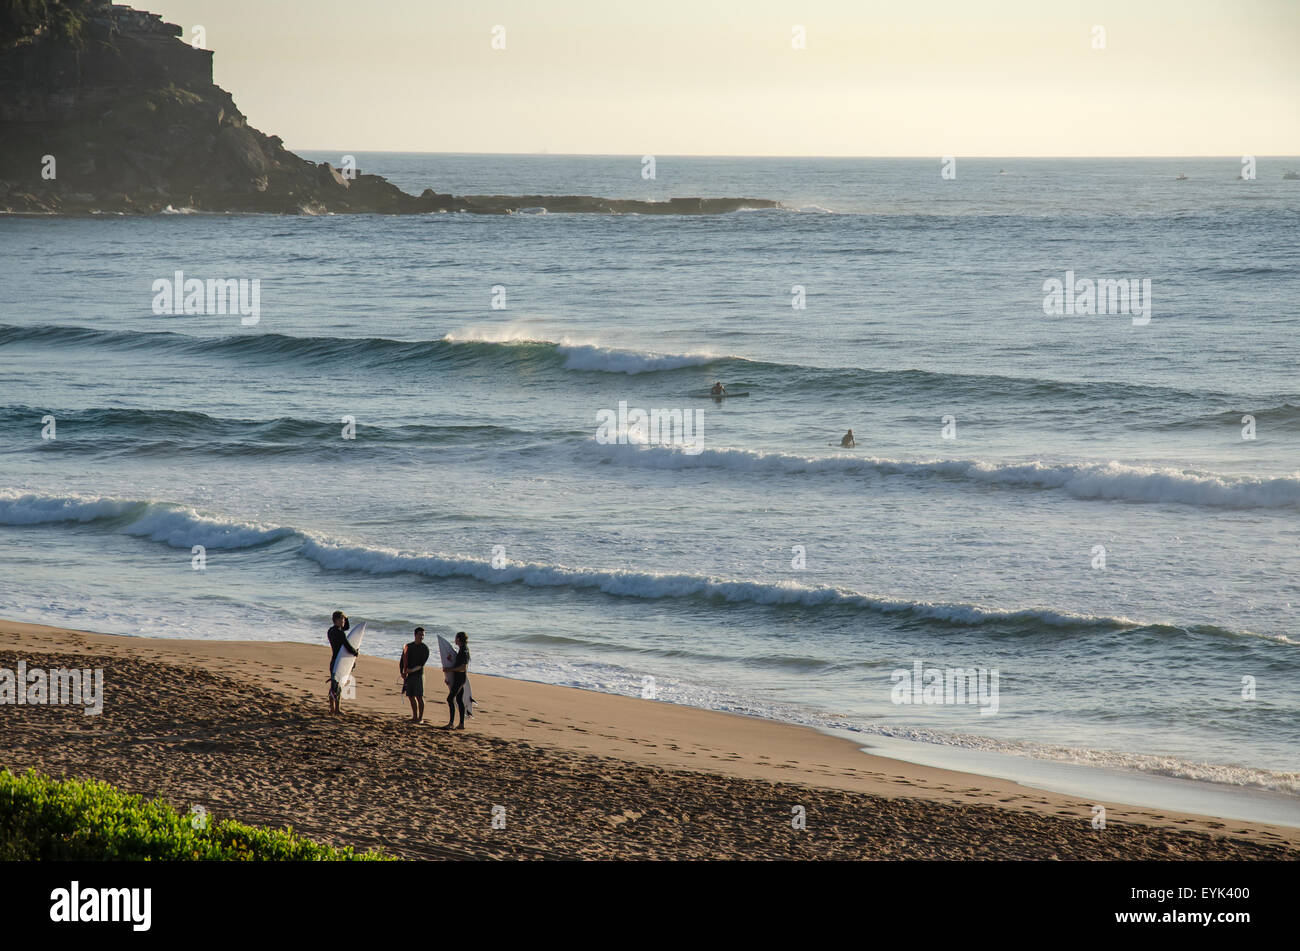 Surfbrettfahrer halten ihre Boards und unterhalten sich am Ufer am Palm Beach in Sydney in Australien Stockfoto